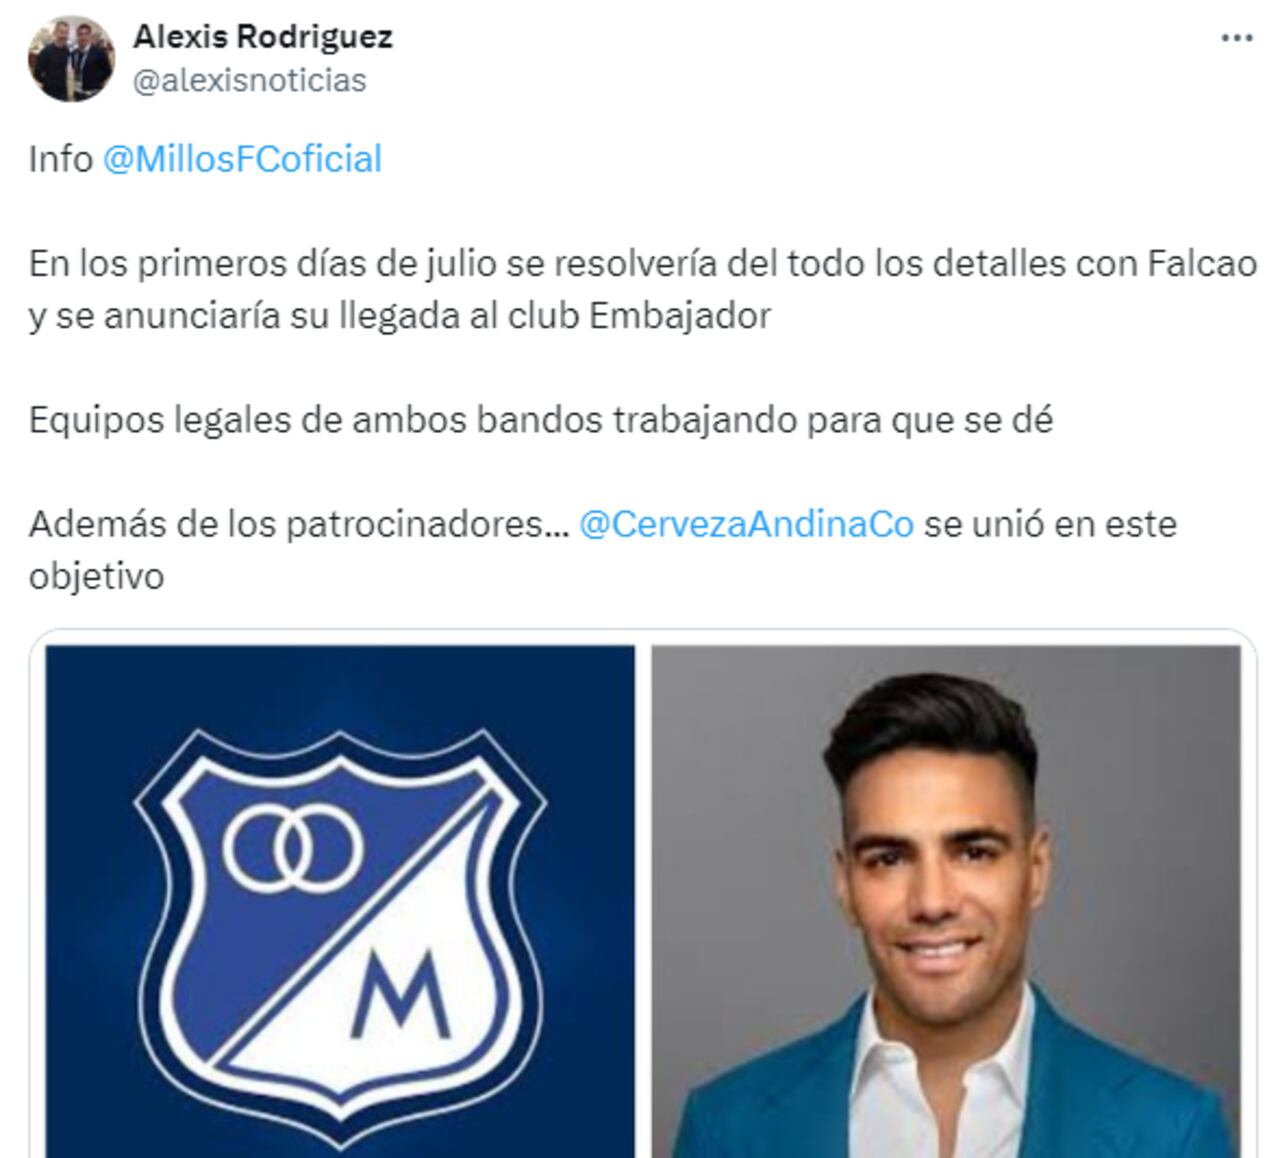 Según el periodista Alexis Rodríguez, Millonarios anunciaría la llegada de Falcao en los primeros días de julio.